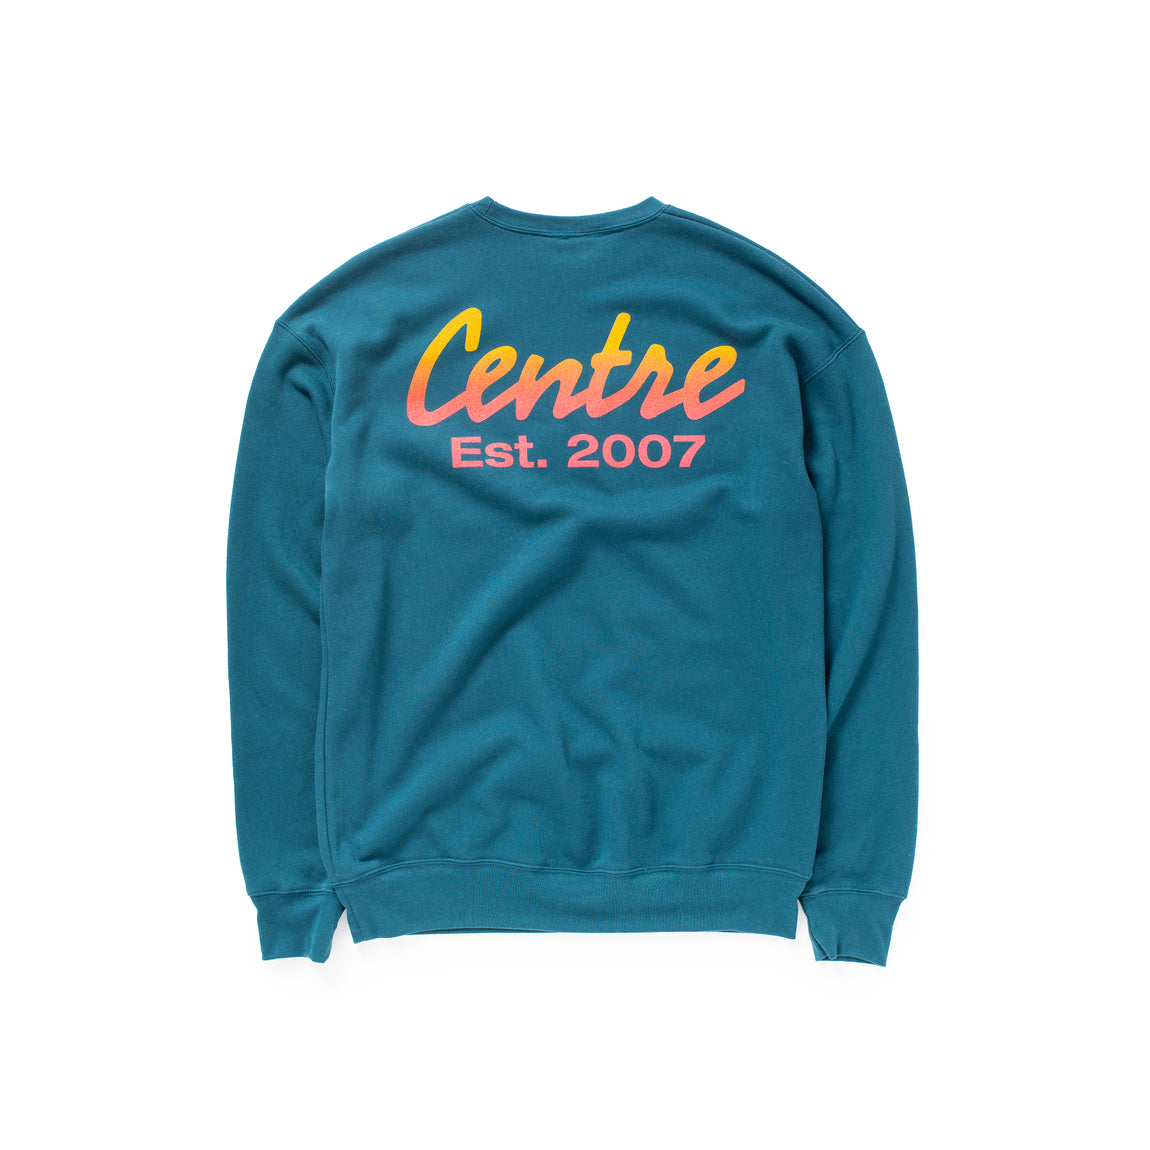 Centre Quote Classic Crew Sweatshirt (Atlantic Teal) - Centre Quote Classic Crew Sweatshirt (Atlantic Teal) - 